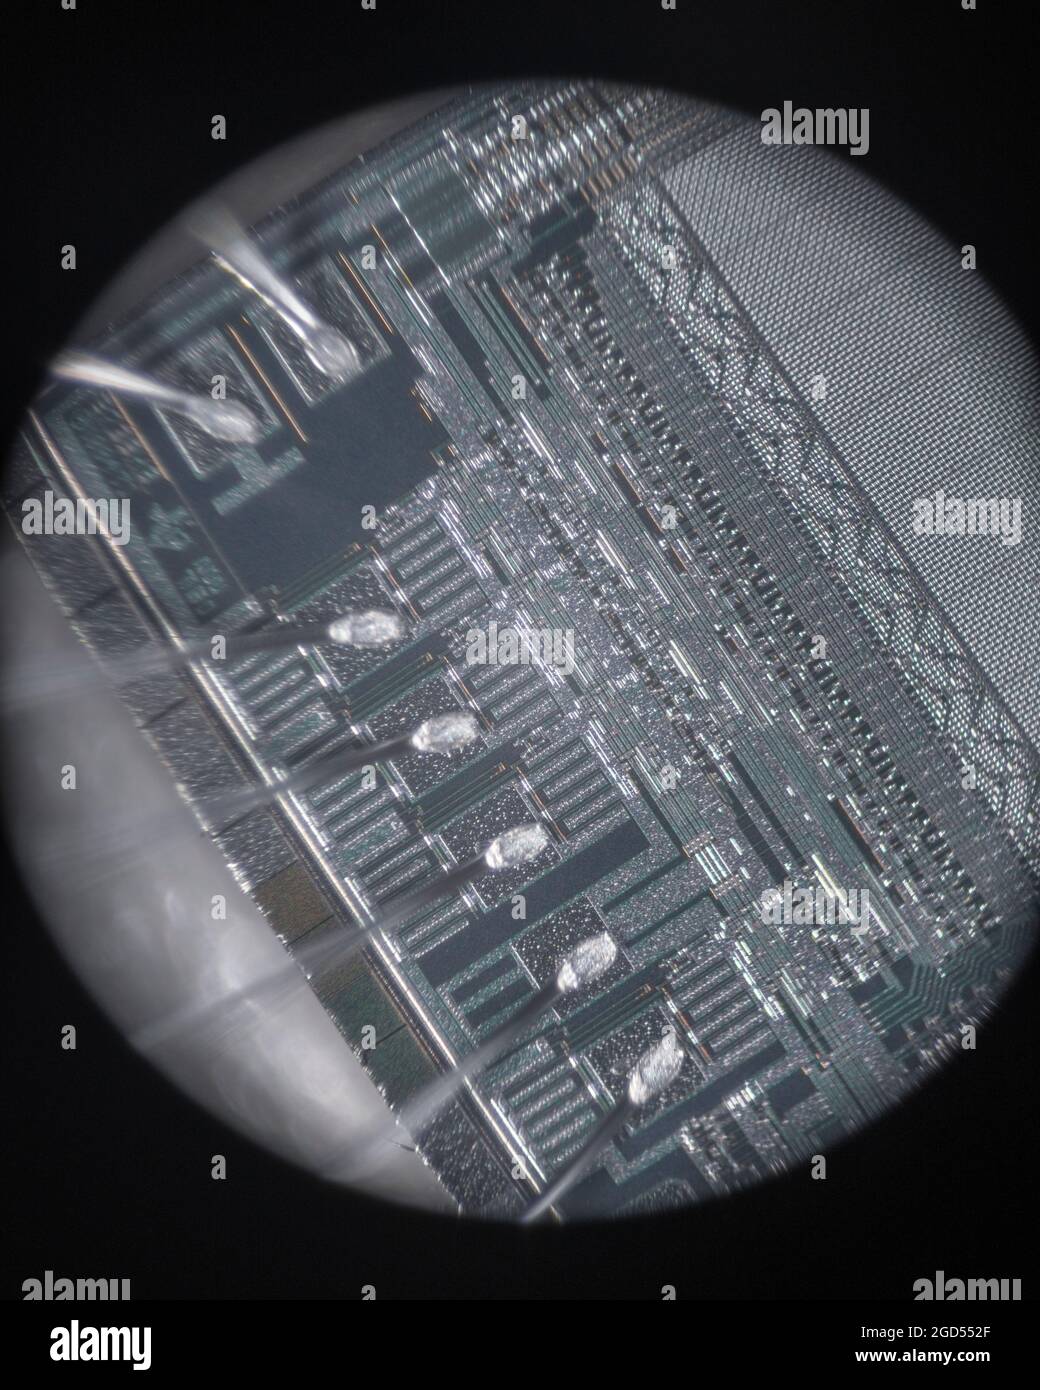 Microfotografia del cablaggio interno e dello stampo della eprom UV TMS 2532A-45JL di Texas Instruments. Presa attraverso un obiettivo di microscopio standard 10x. VEDERE LE NOTE Foto Stock